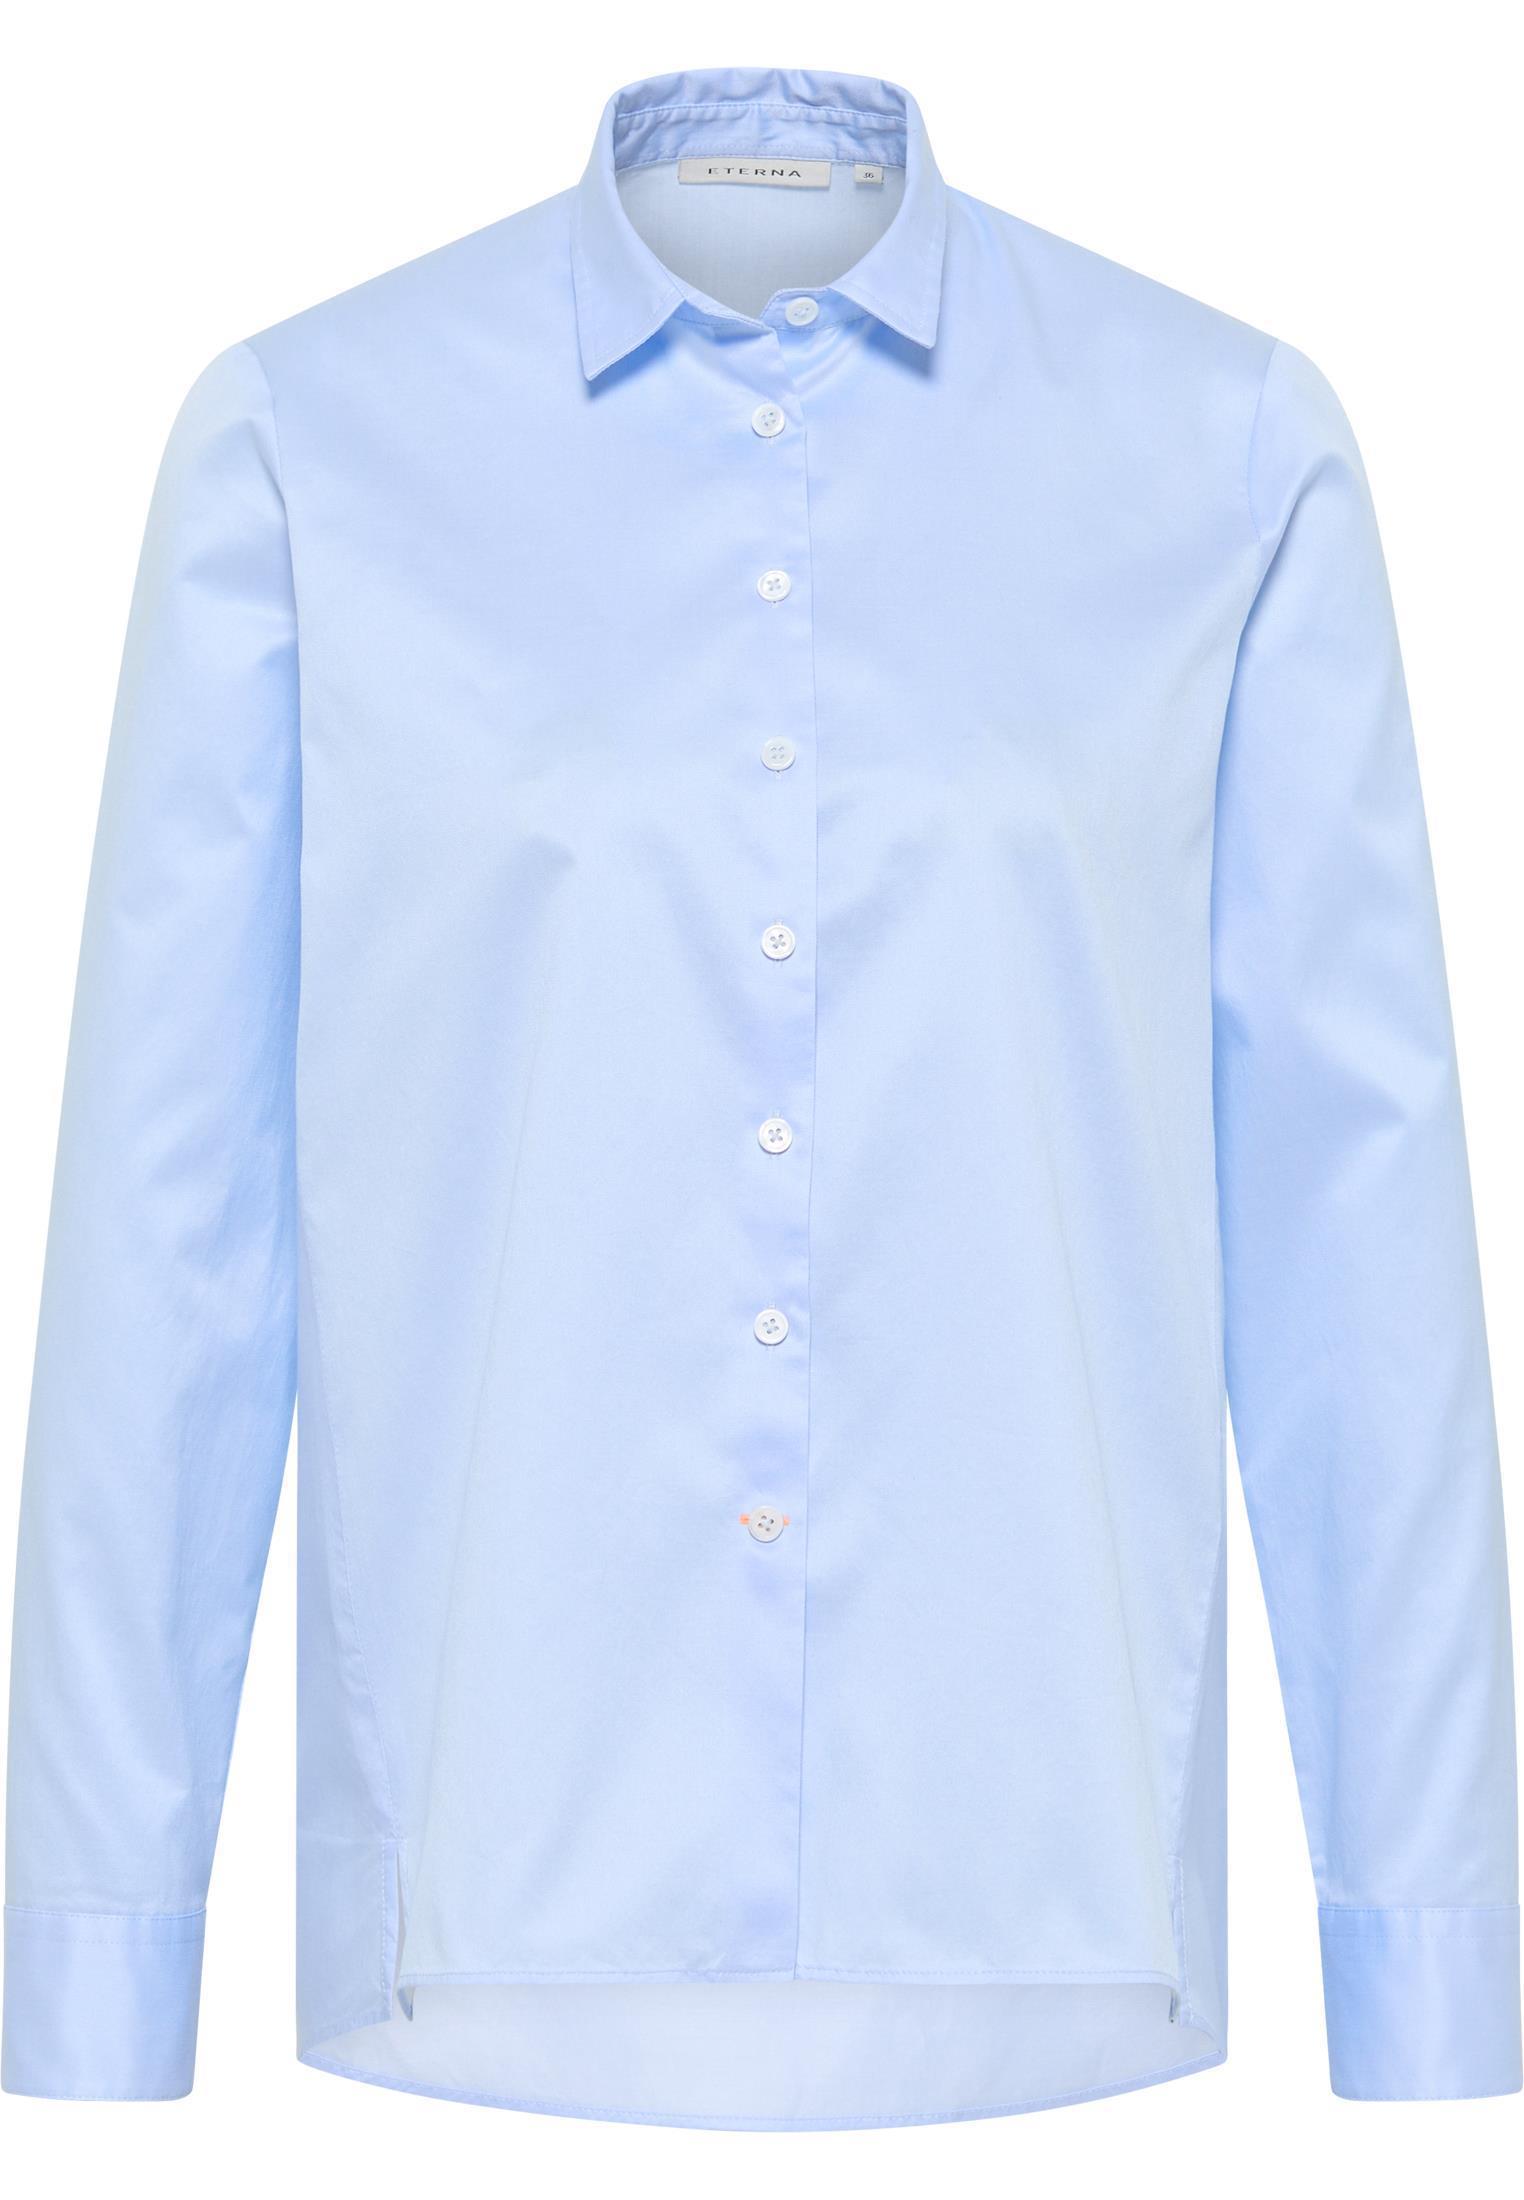 Bluse SOFT LUXURY SHIRT Lose Fit Eterna® Hellblau Loose Fit 63 cm  Hemd-Kragen 34 günstig besticken und bedrucken | cotton ART®